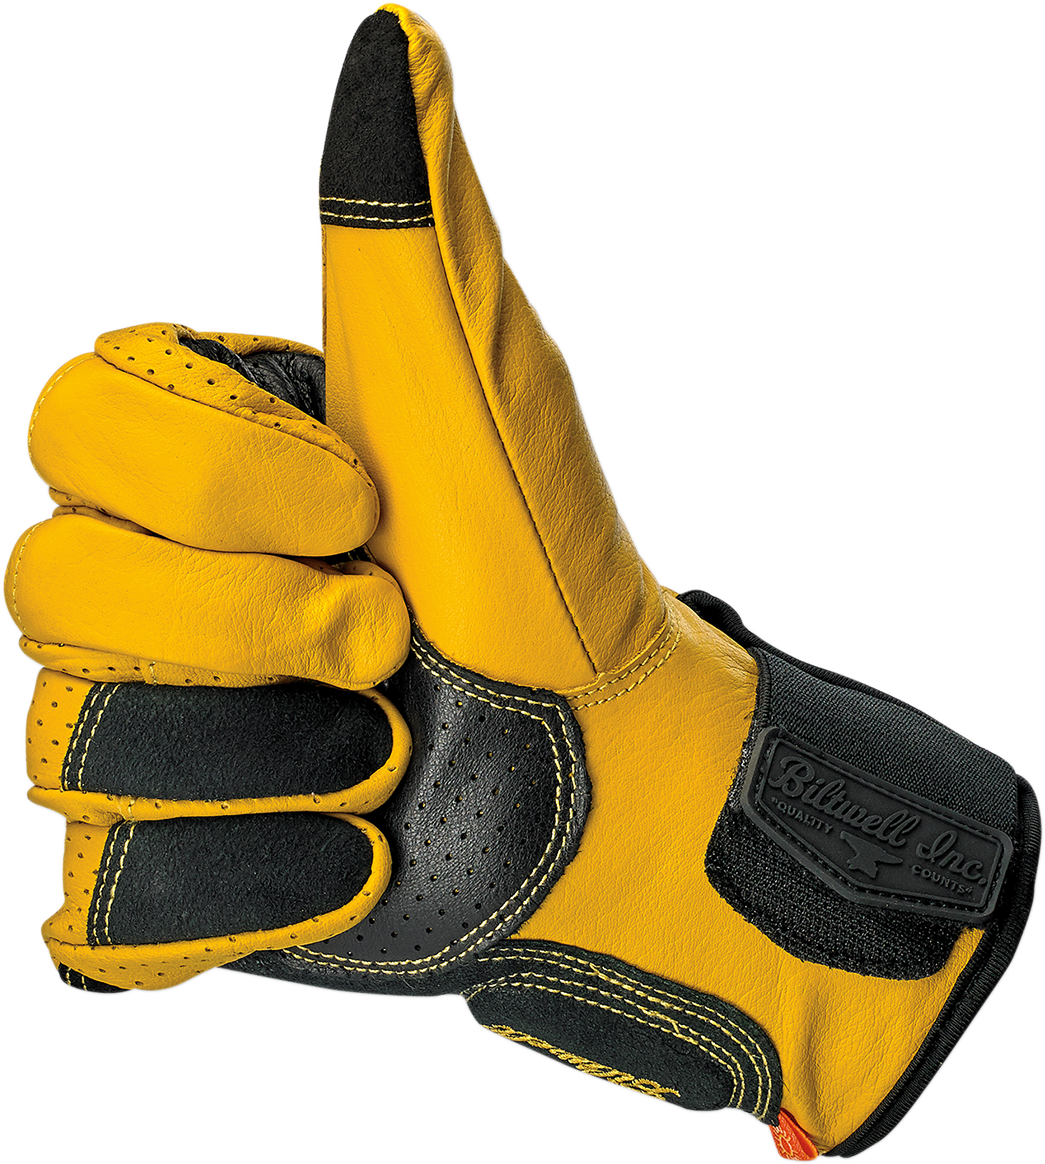 BILTWELL Borrego Gloves - Gold/Black - Large 1506-0701-304